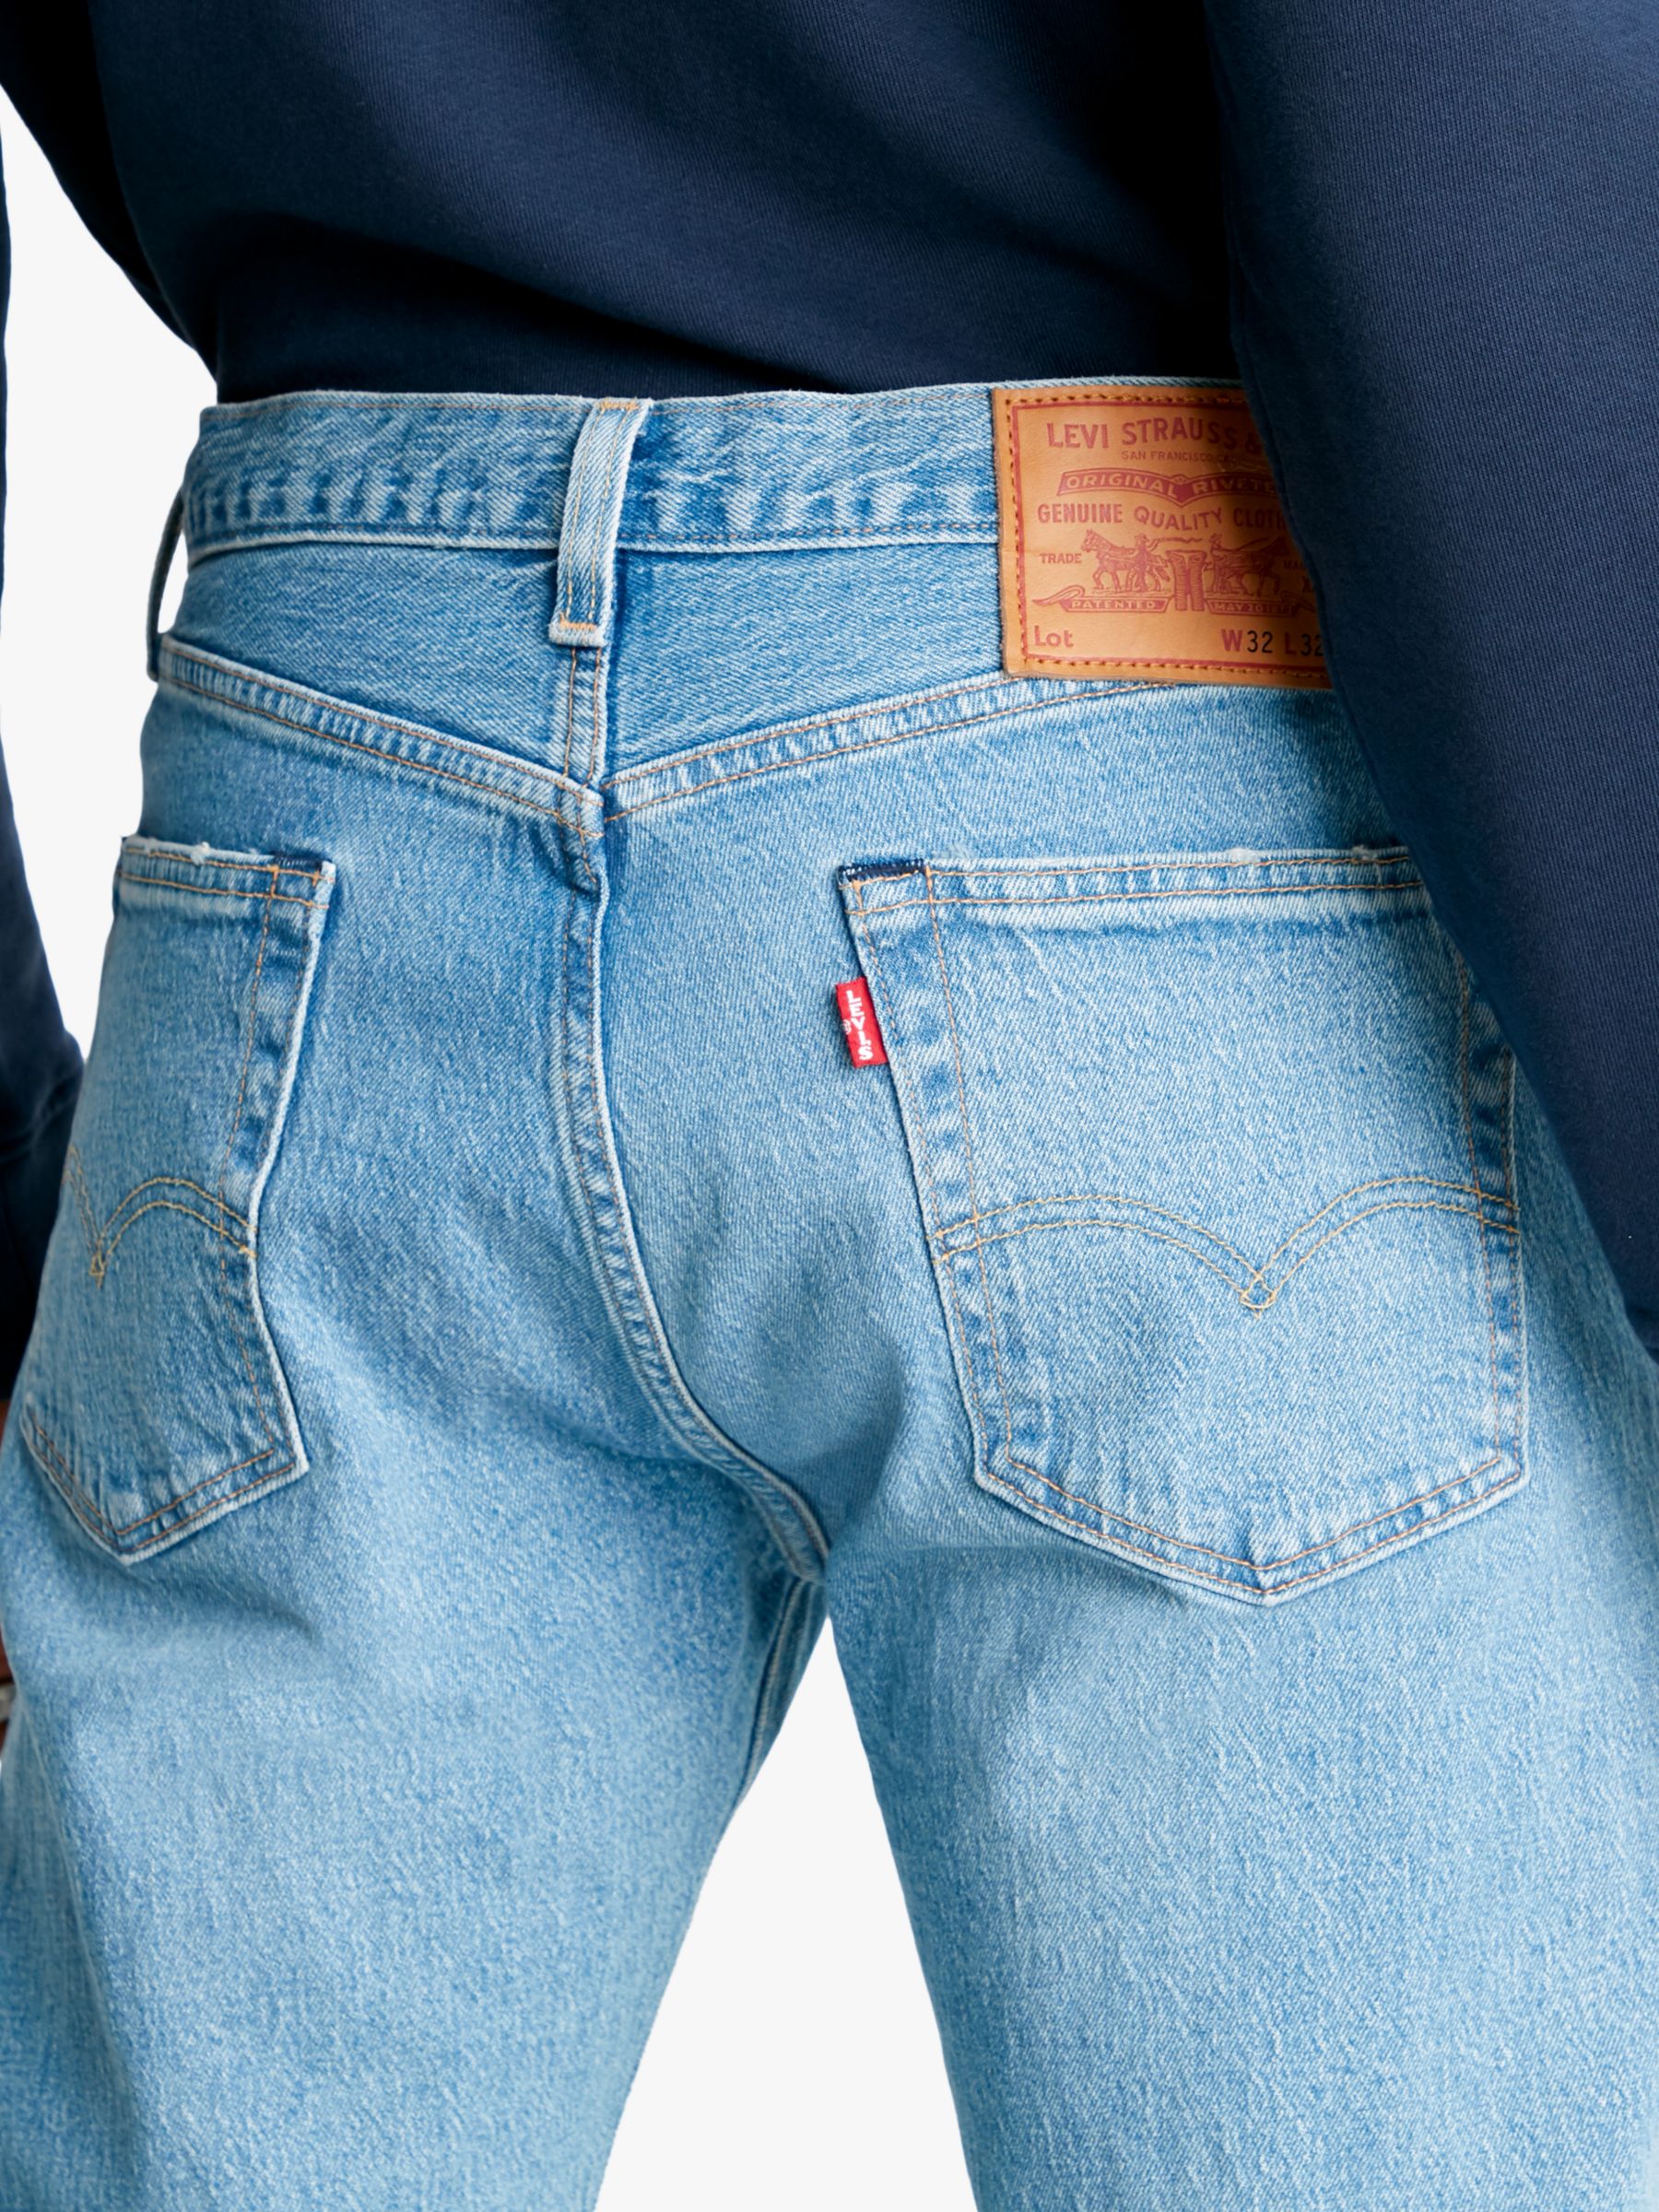 Levi's 501 '93 Original Straight Fit Jeans, Basil Castle, 30R